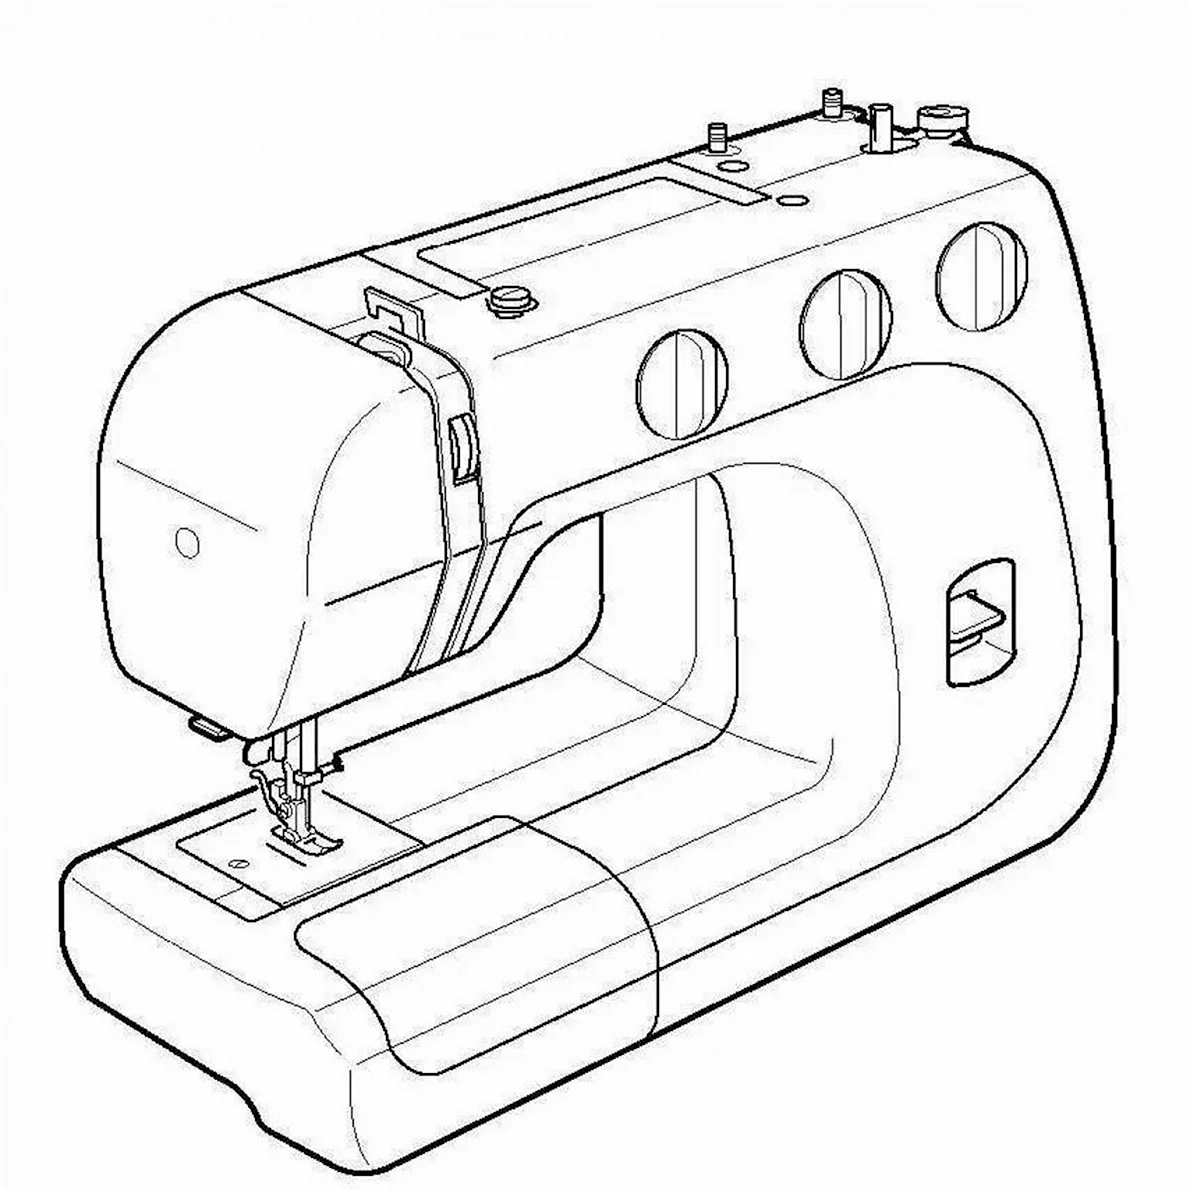 Швейная машинка Comfort 210